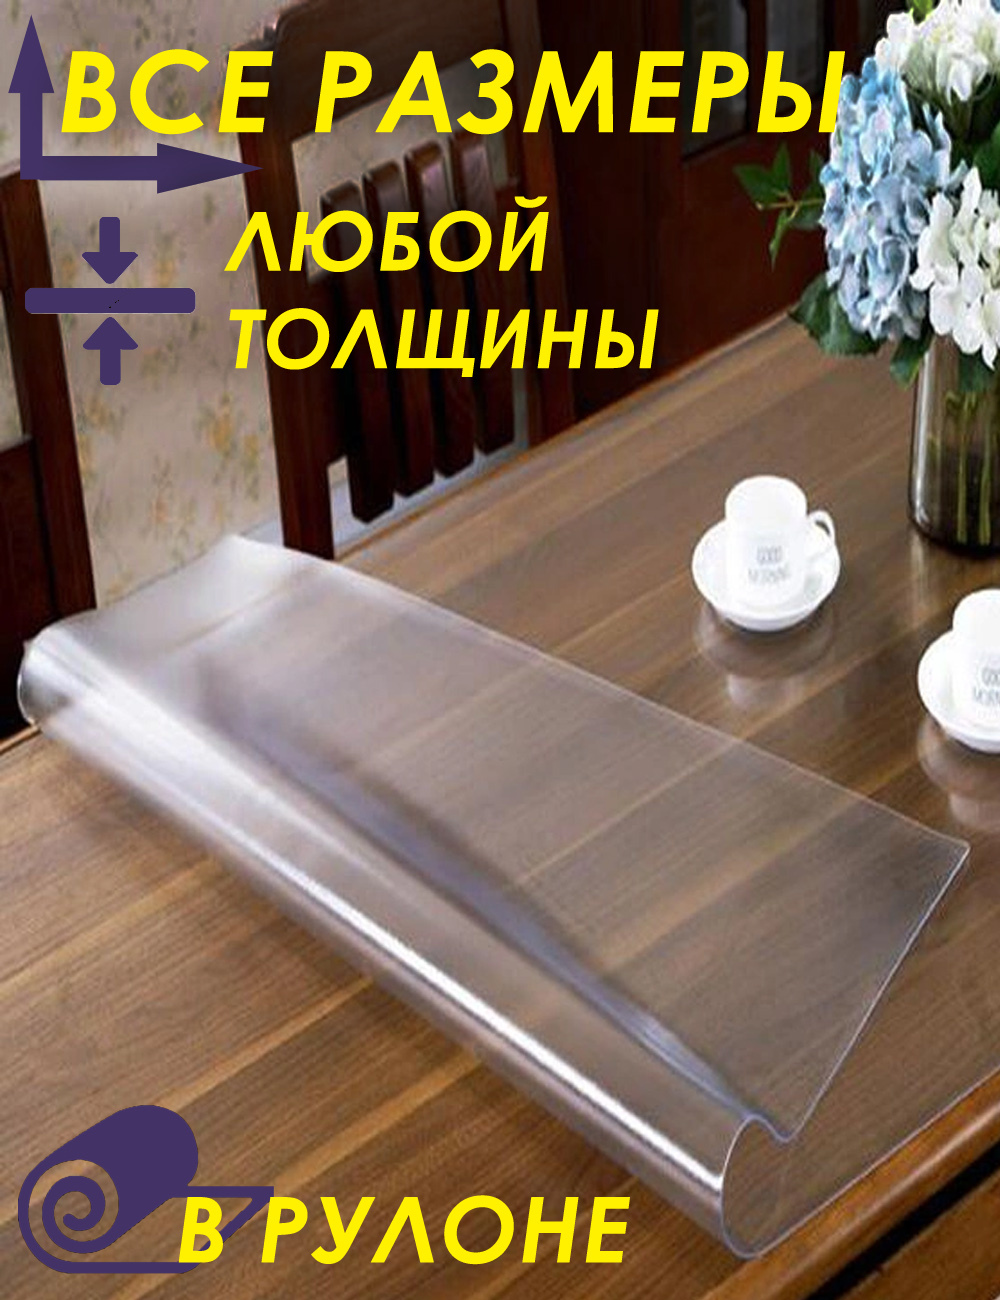 пленка мягкое стекло на стол